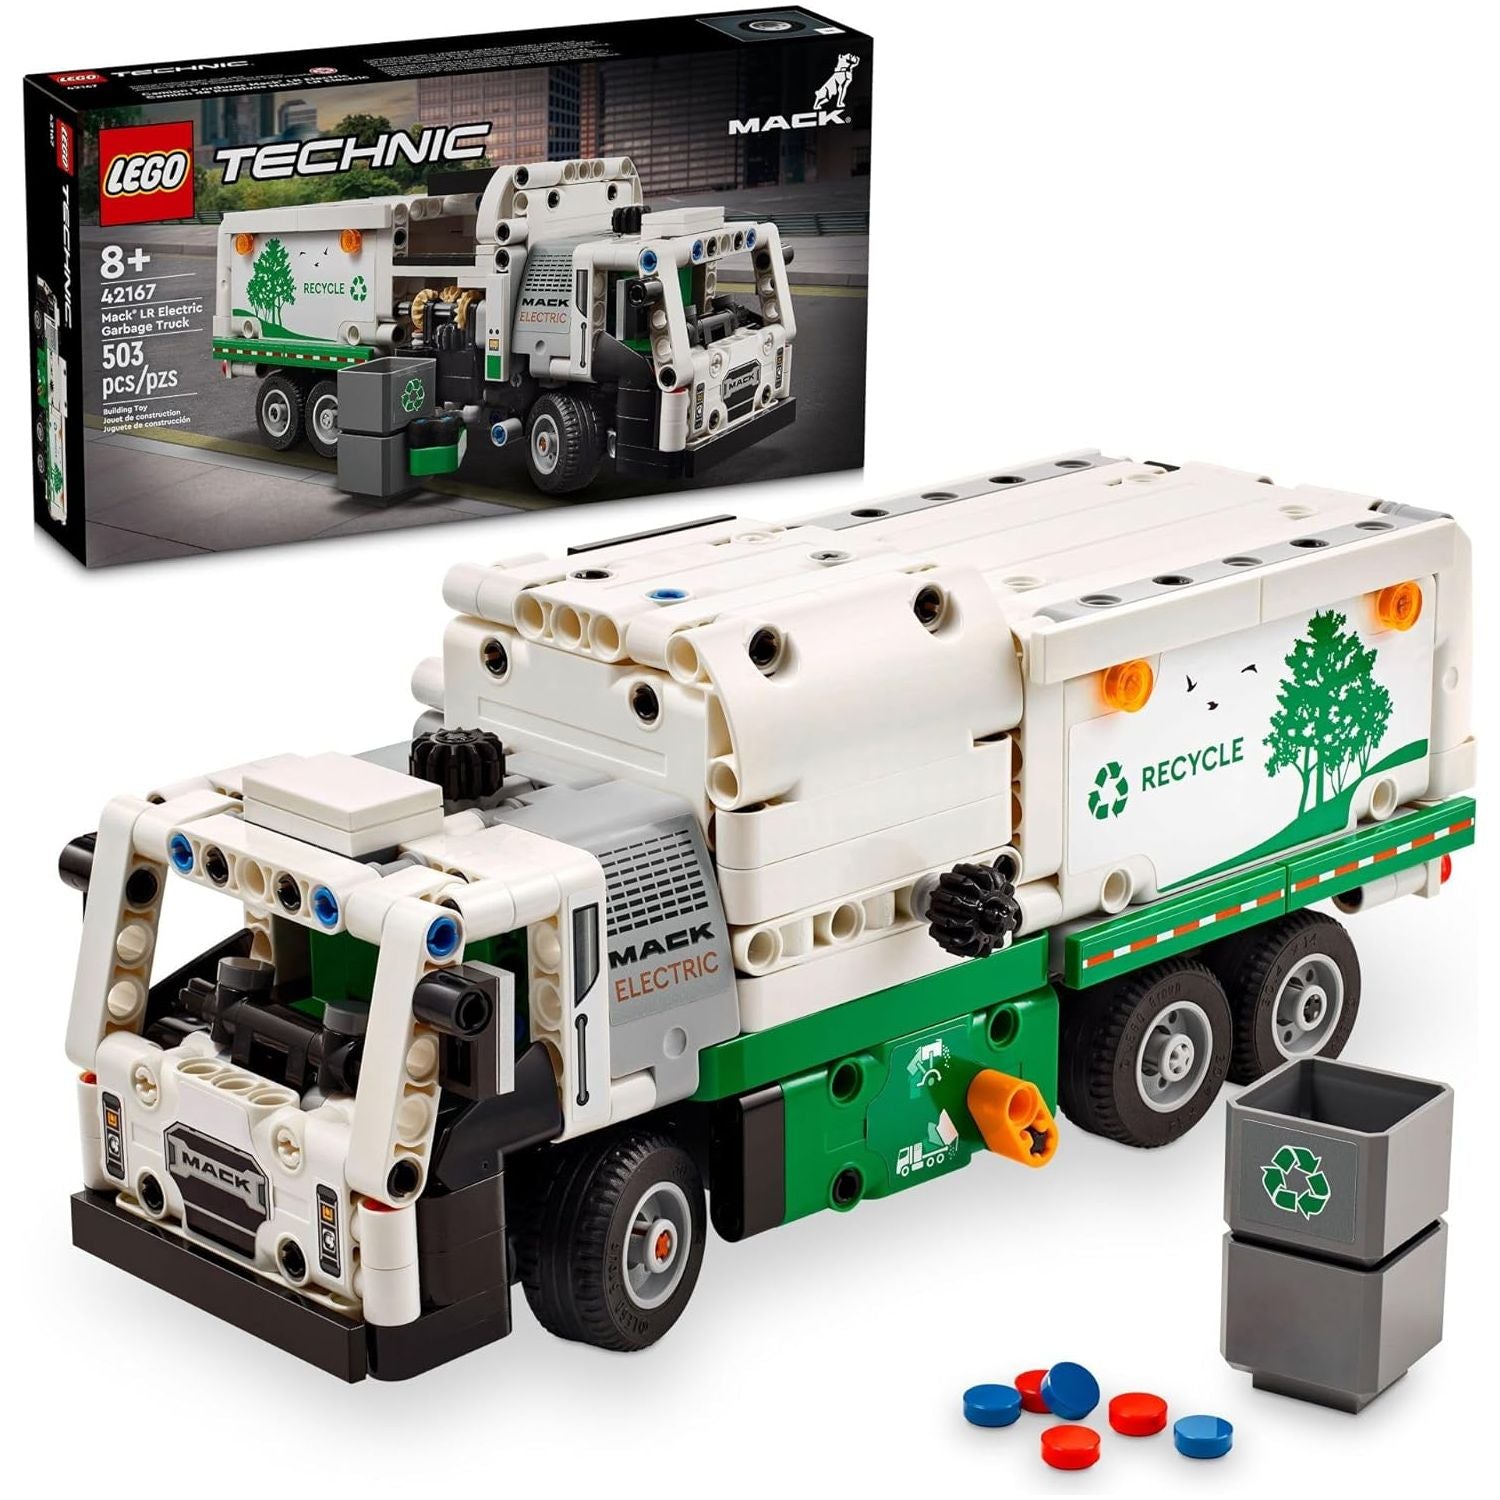 لعبة شاحنة القمامة الكهربائية تكنيك ماك LR من ليجو 42167، شاحنة أطفال قابلة للبناء للعب التظاهري.